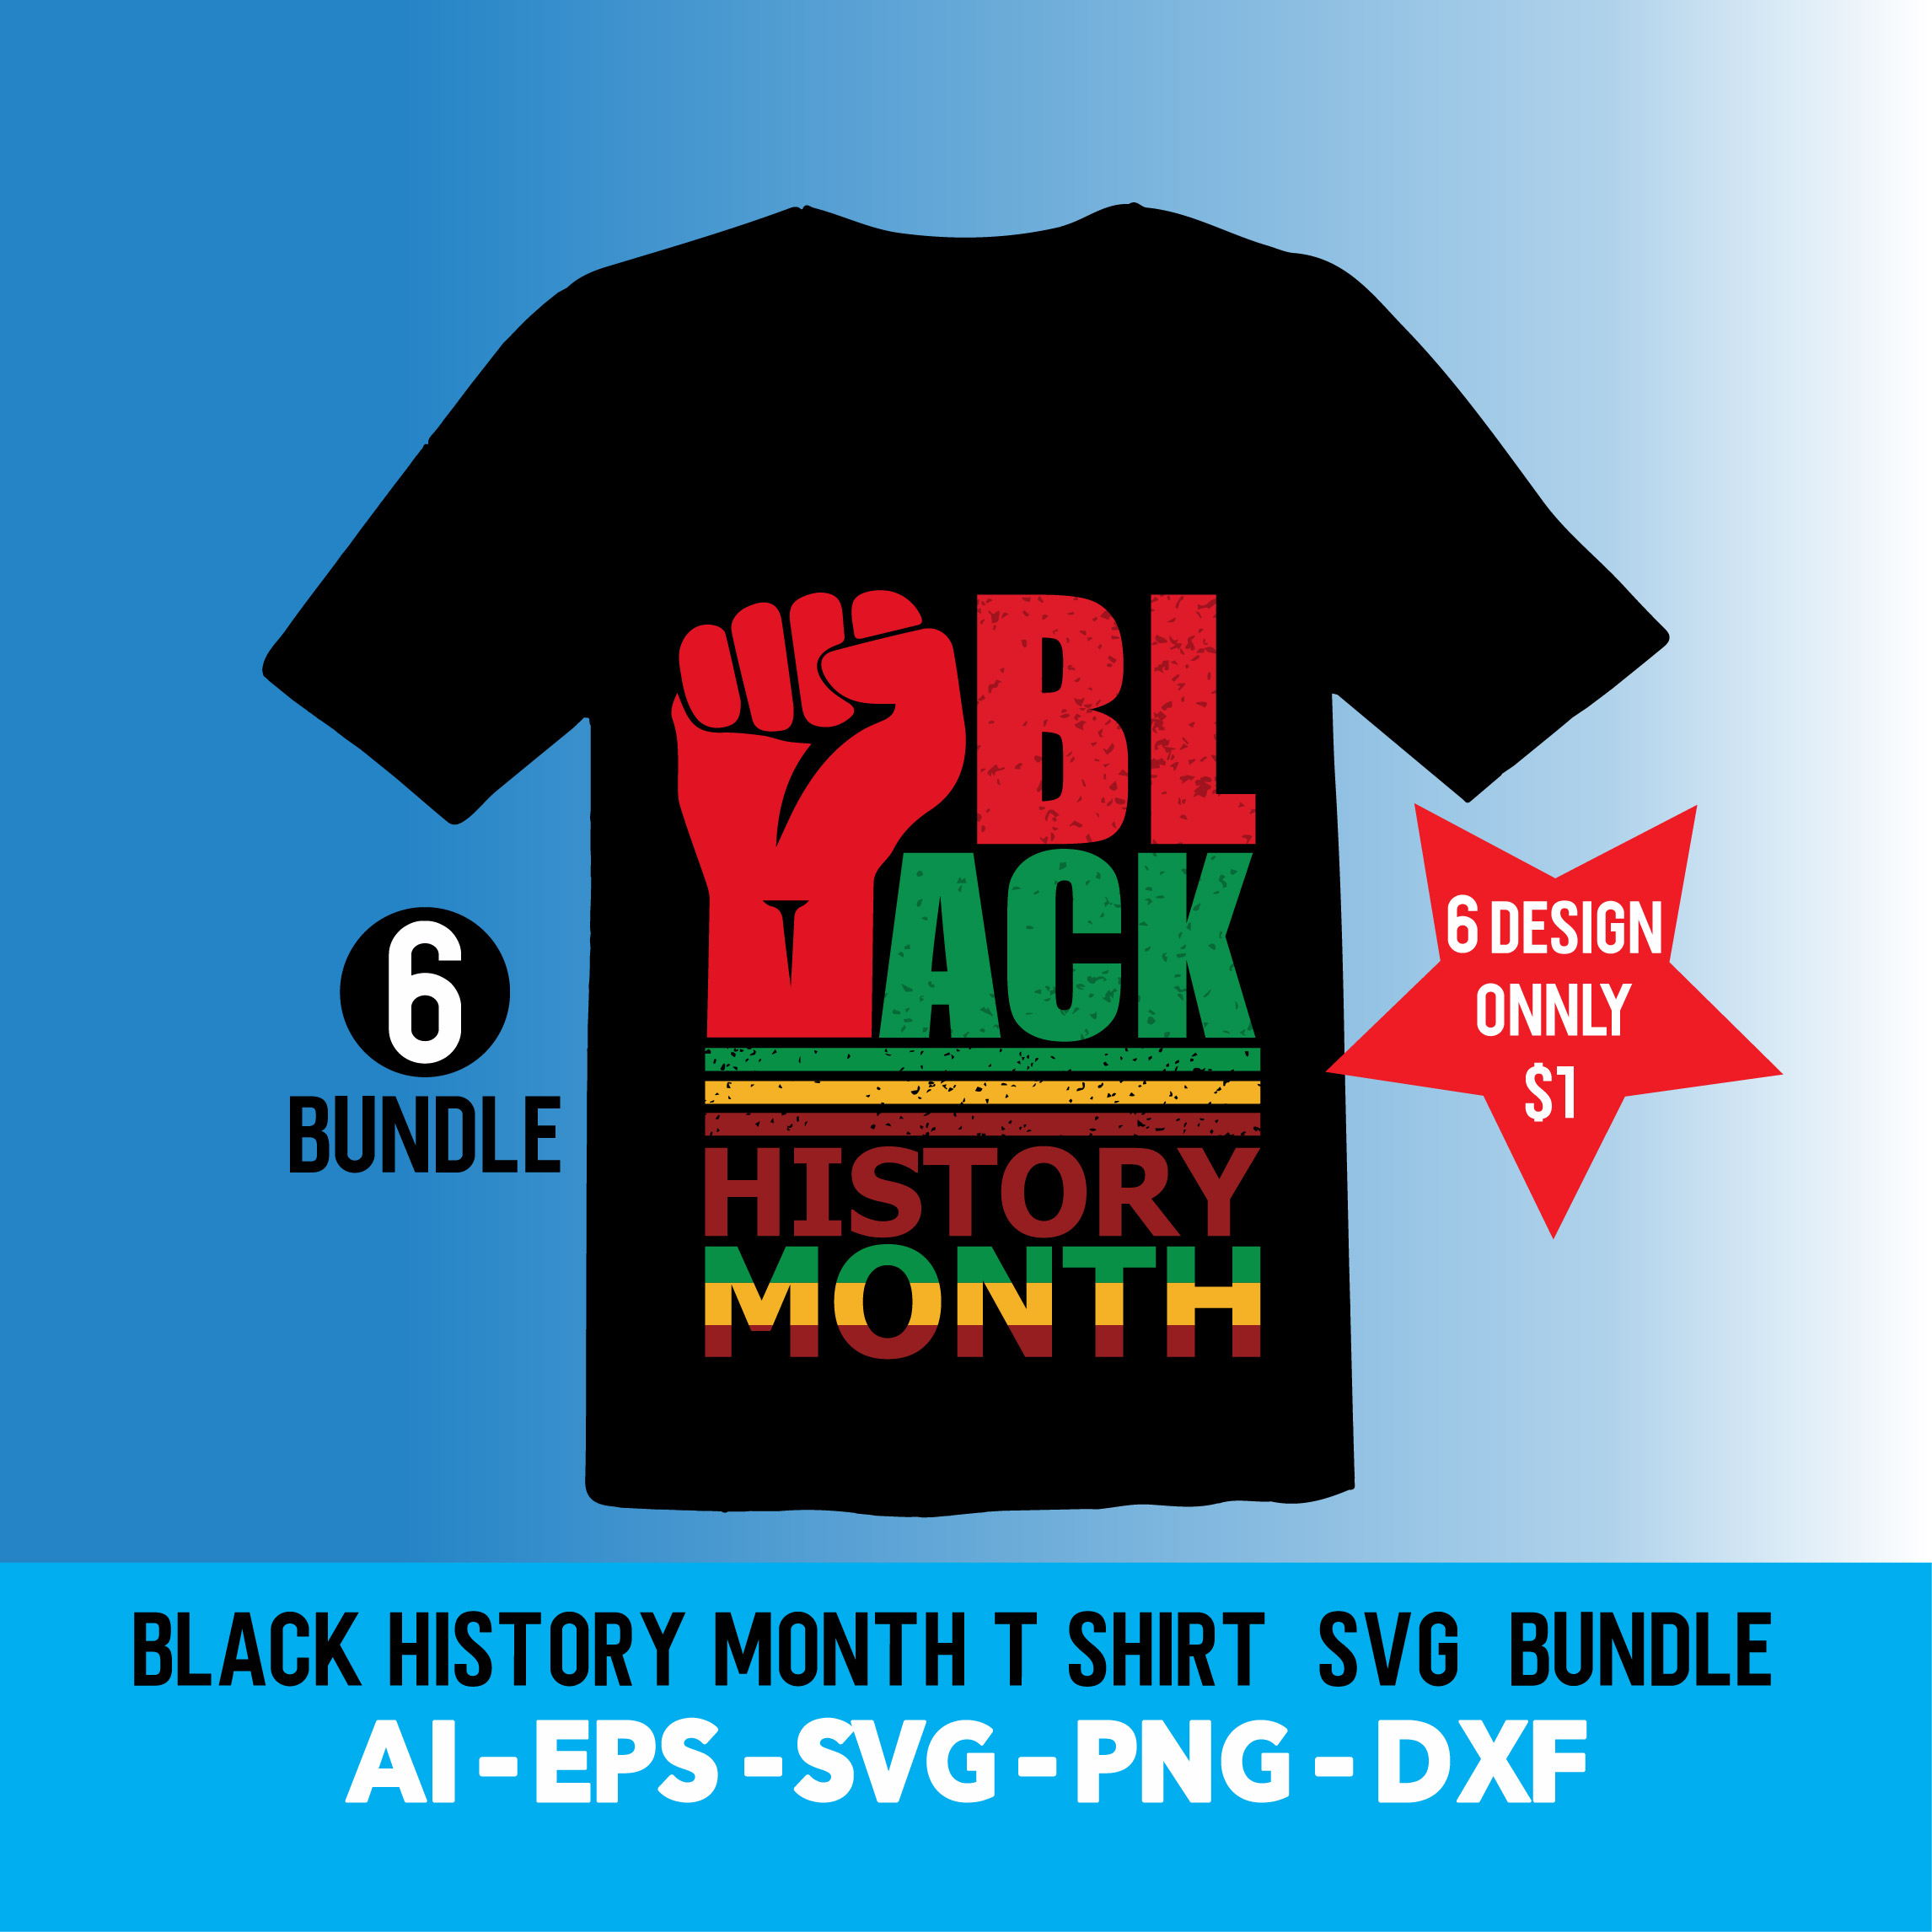 Black History Month T-Shirt SVG Bundle Design cover image.